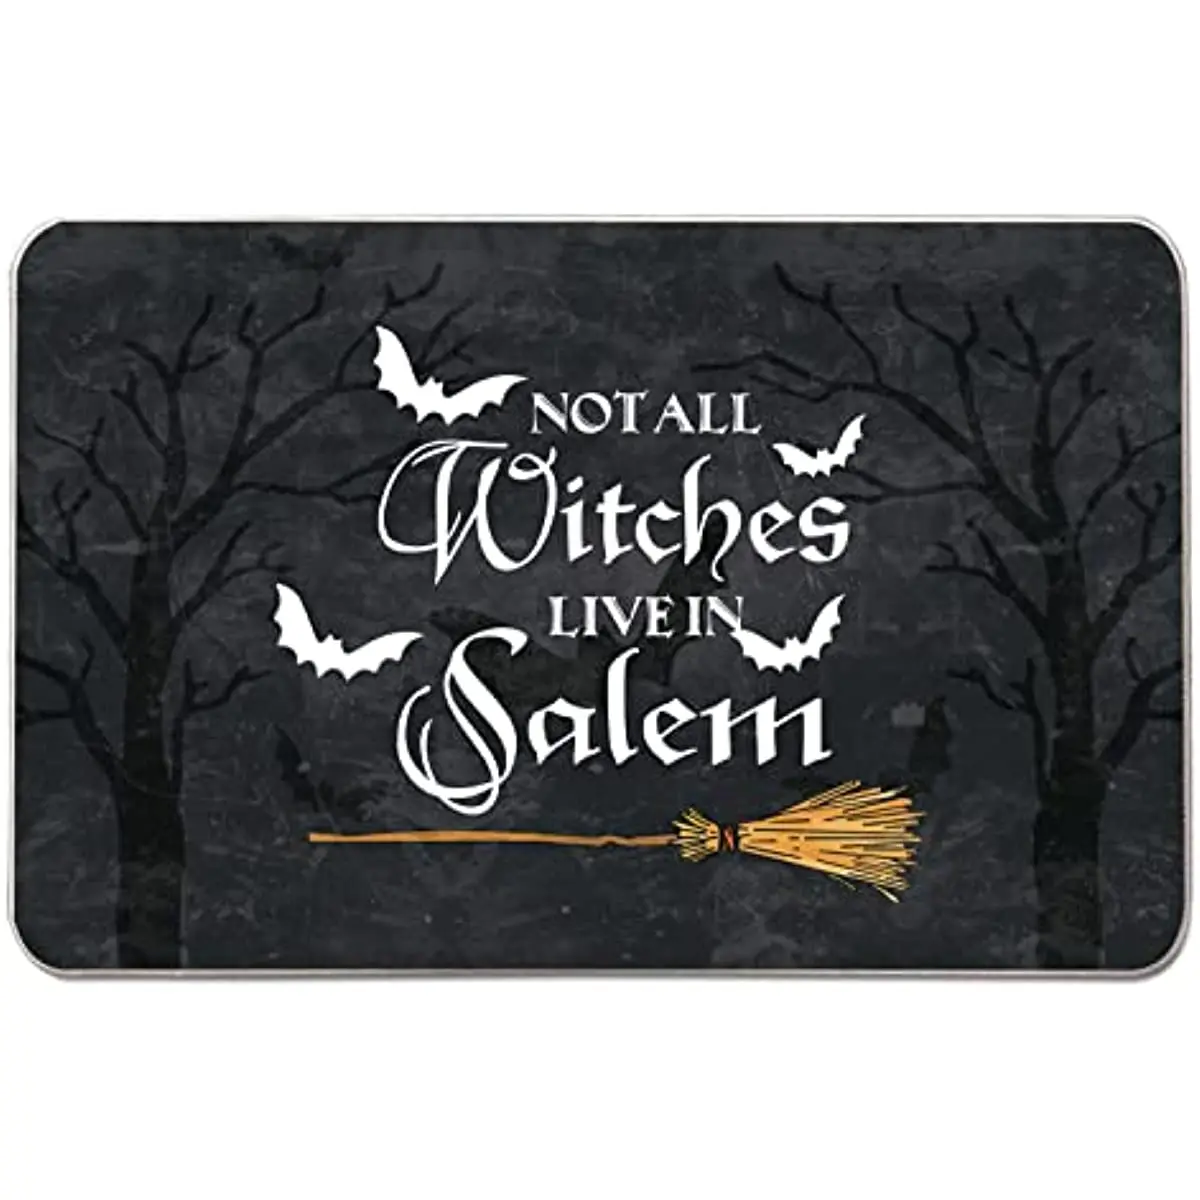 

Halloween Door Mat Outdoor Rug Bat Broom Doormat NOT All Witches Live in Salem Rugs Decor Home Kitchen Floor Front Door Mats